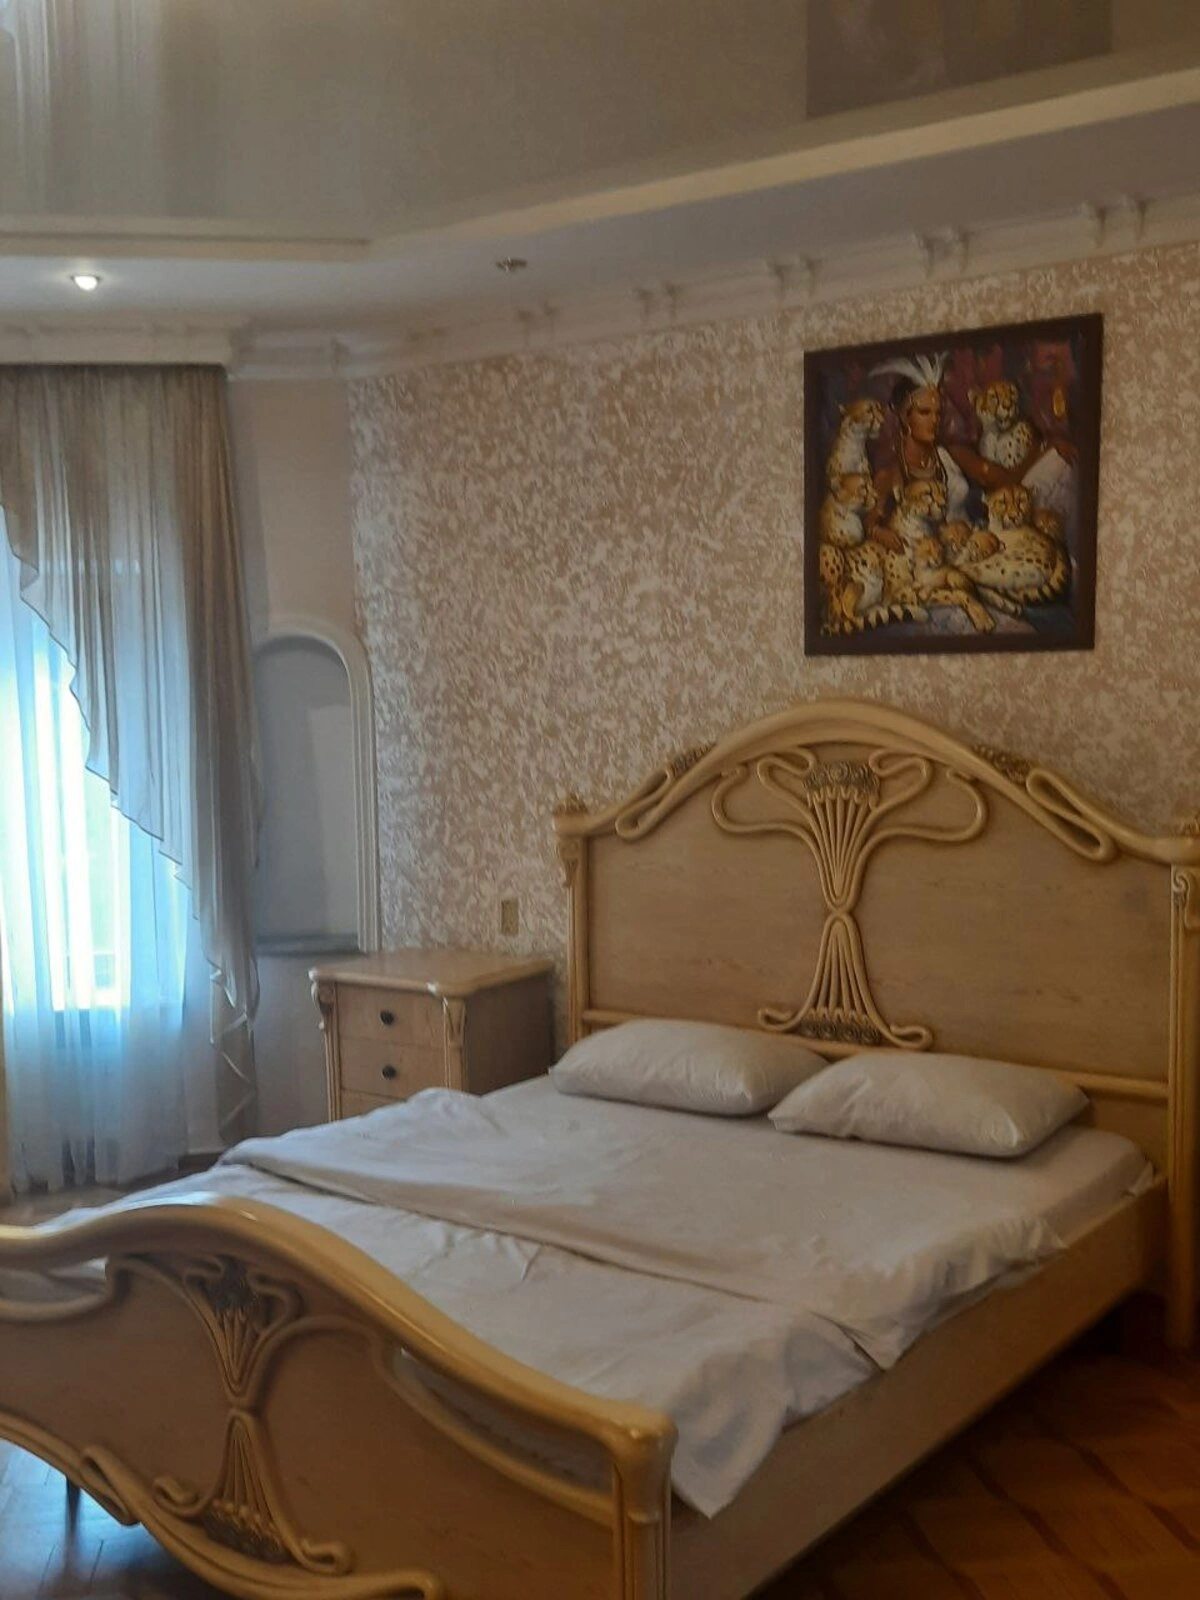 House for sale. 300 m², 2 floors. Lvivska vul., Odesa. 